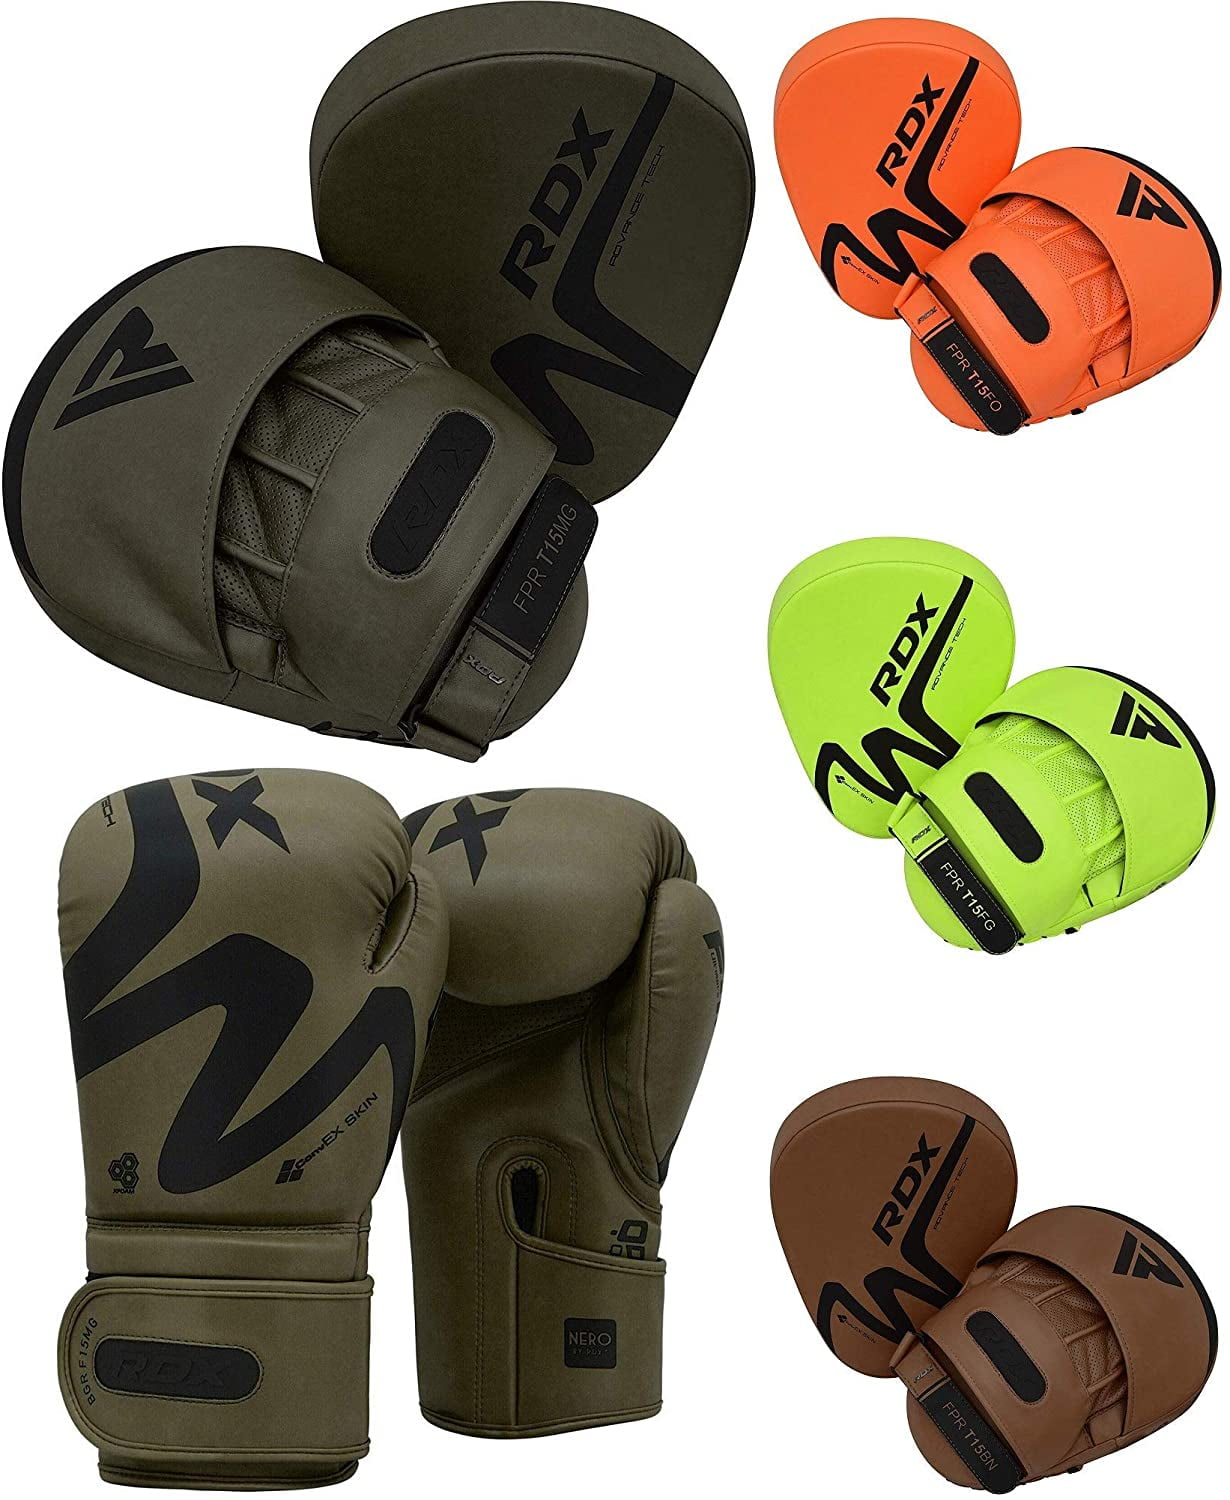 Details about   Junior Boxing Gloves & Focus Pads Set Hook and Jab Sparring Punchbag Kids 